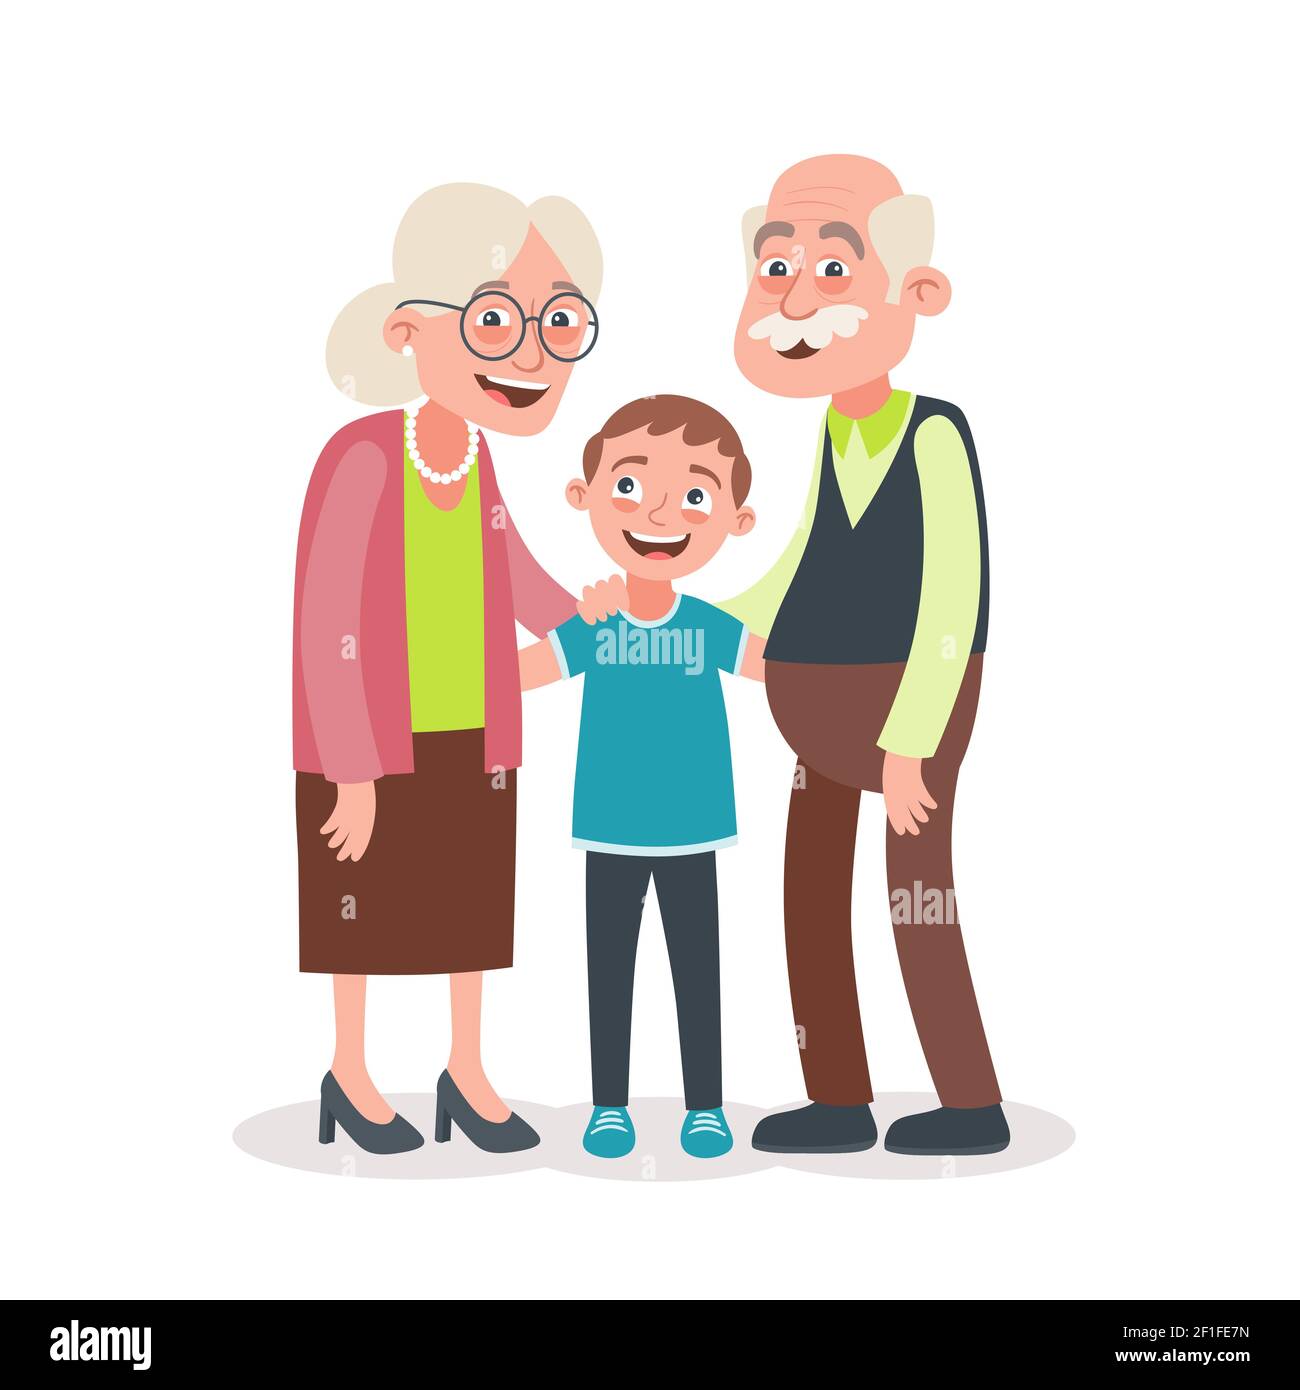 Portrait des grands-parents et du petit-fils. Concept de la fête des grands-parents. Illustration vectorielle de style dessin animé, isolée sur fond blanc. Illustration de Vecteur